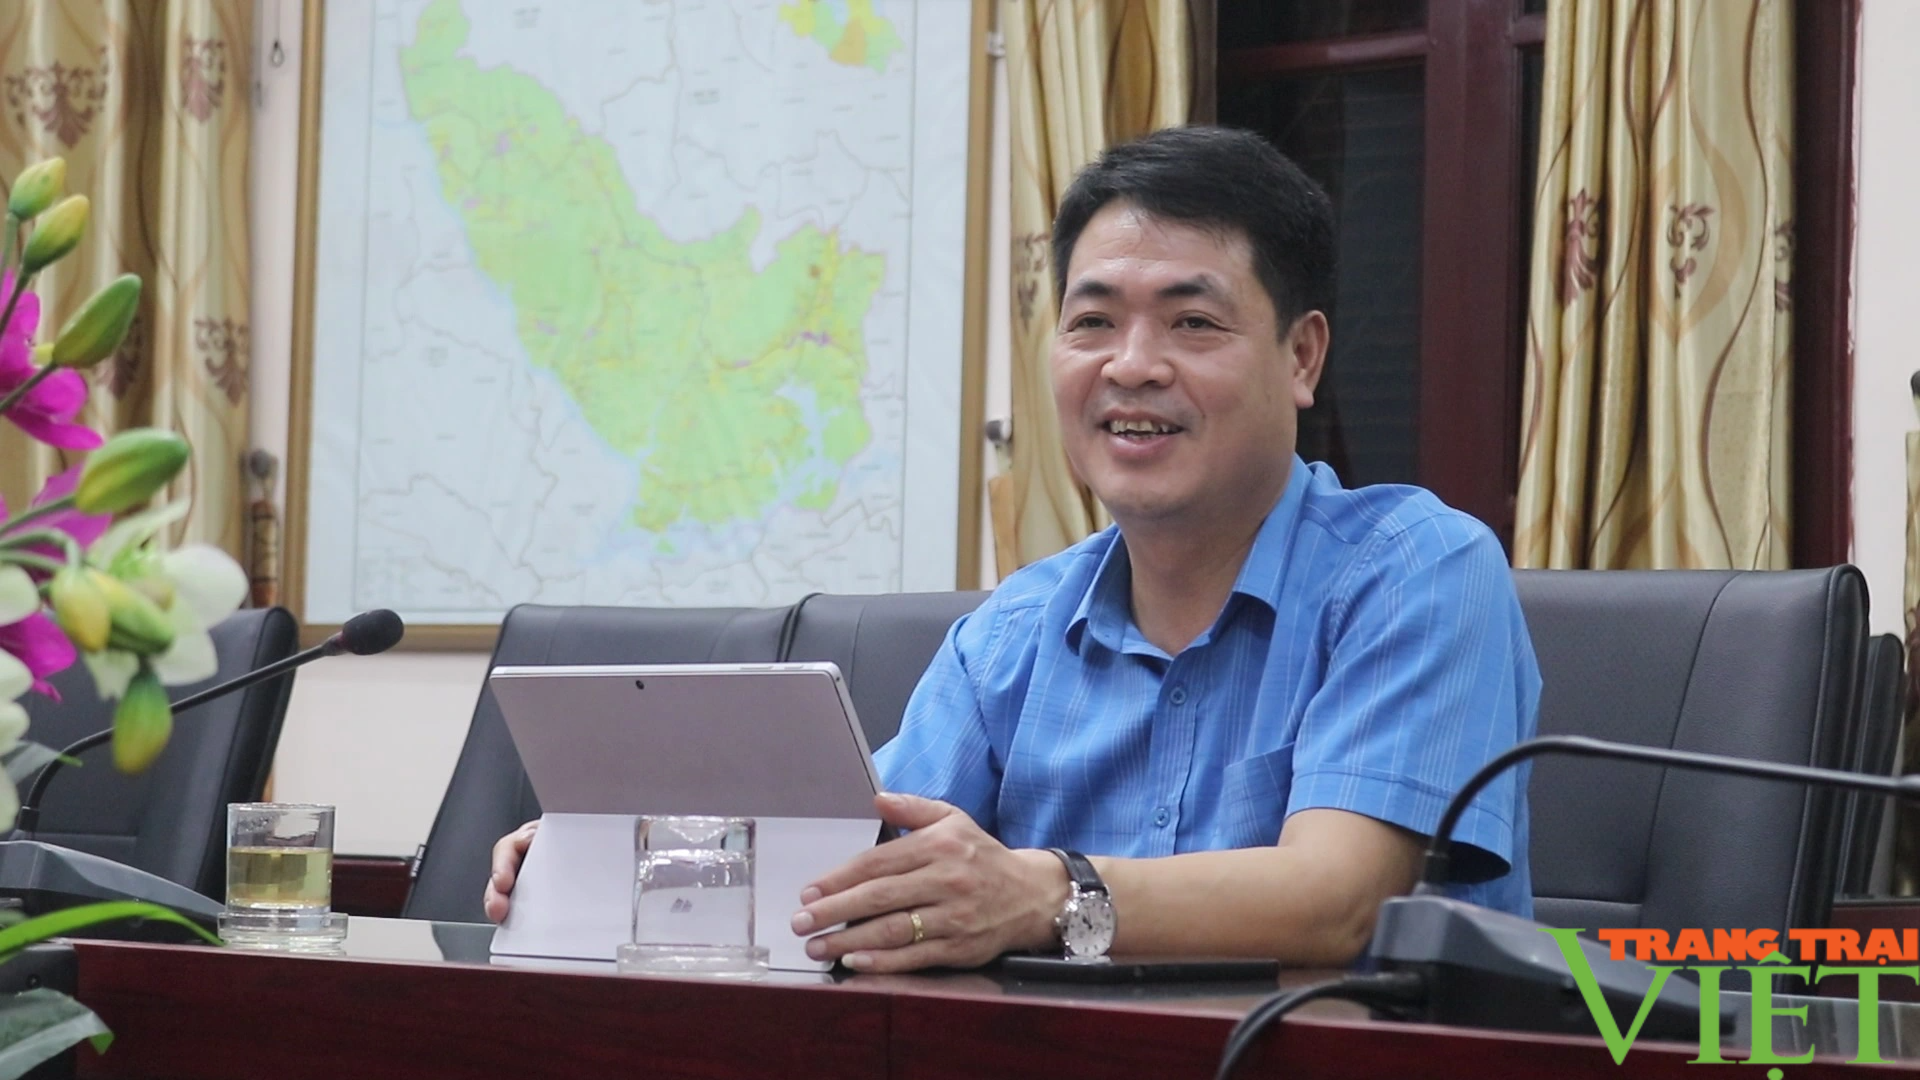 Hòa Bình: Huyện nghèo Đà Bắc khởi sắc nhờ nông thôn mới - Ảnh 1.